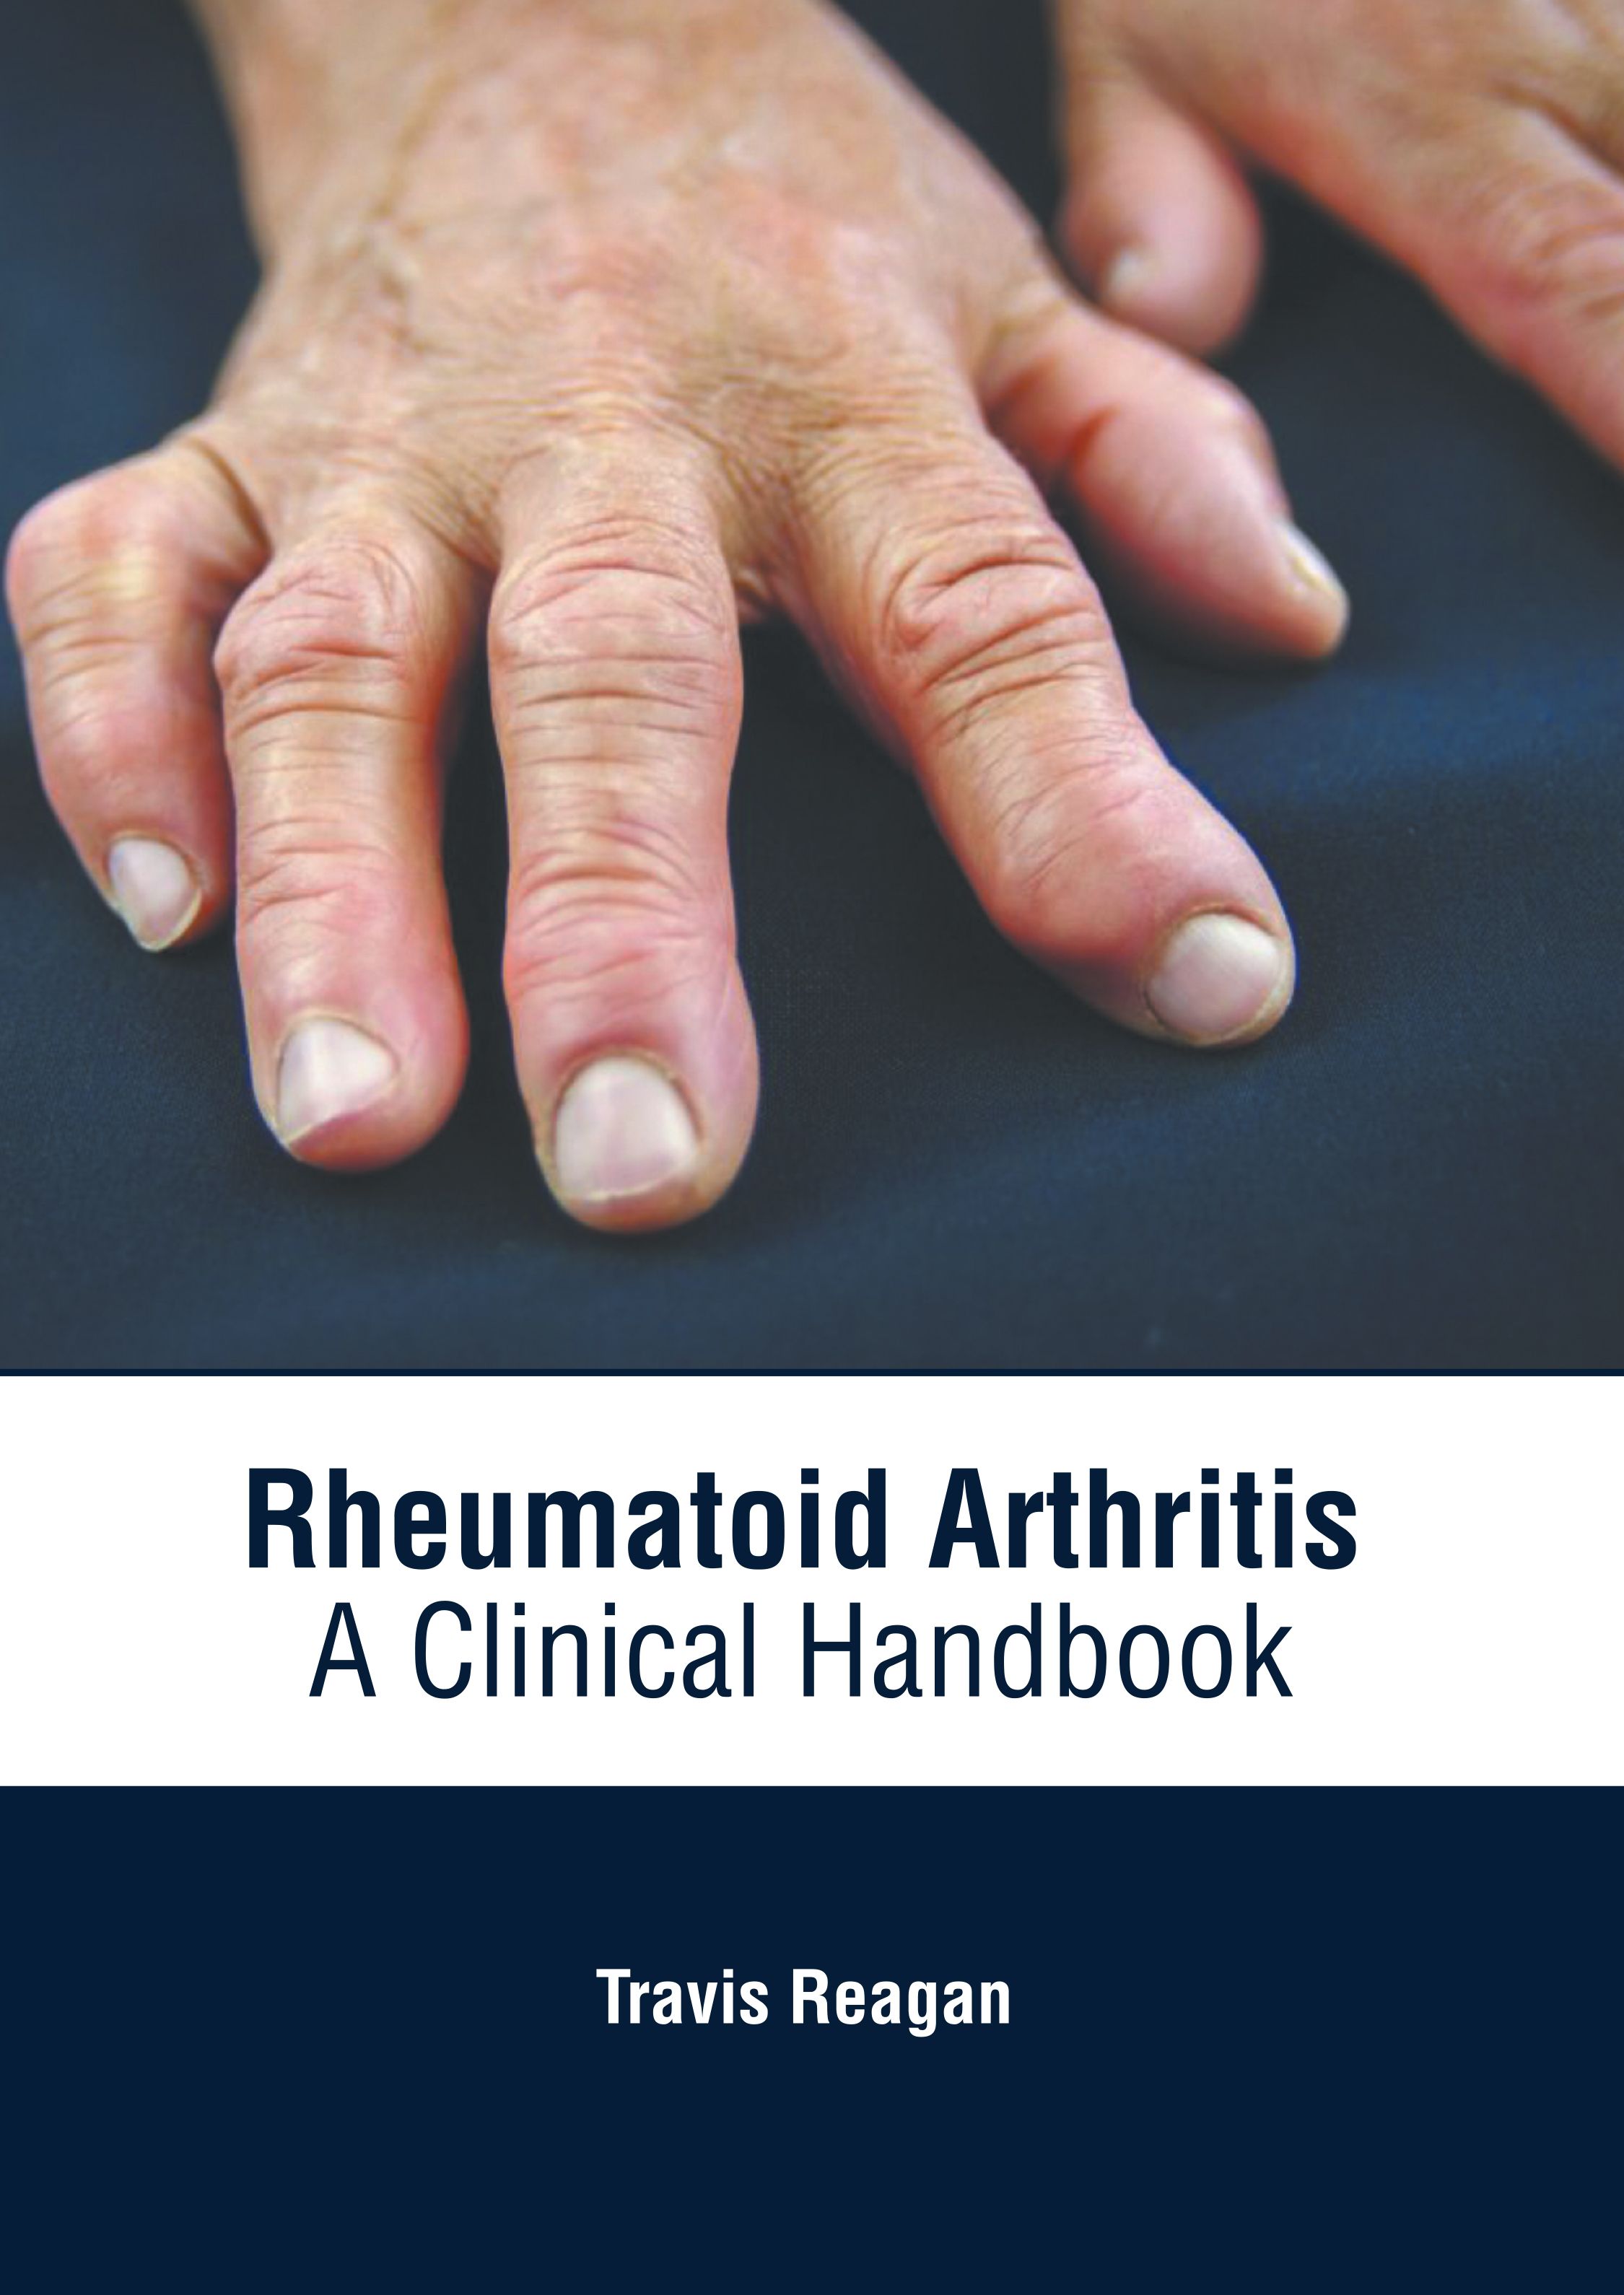 RHEUMATOID ARTHRITIS: A CLINICAL HANDBOOK- ISBN: 9781639274758